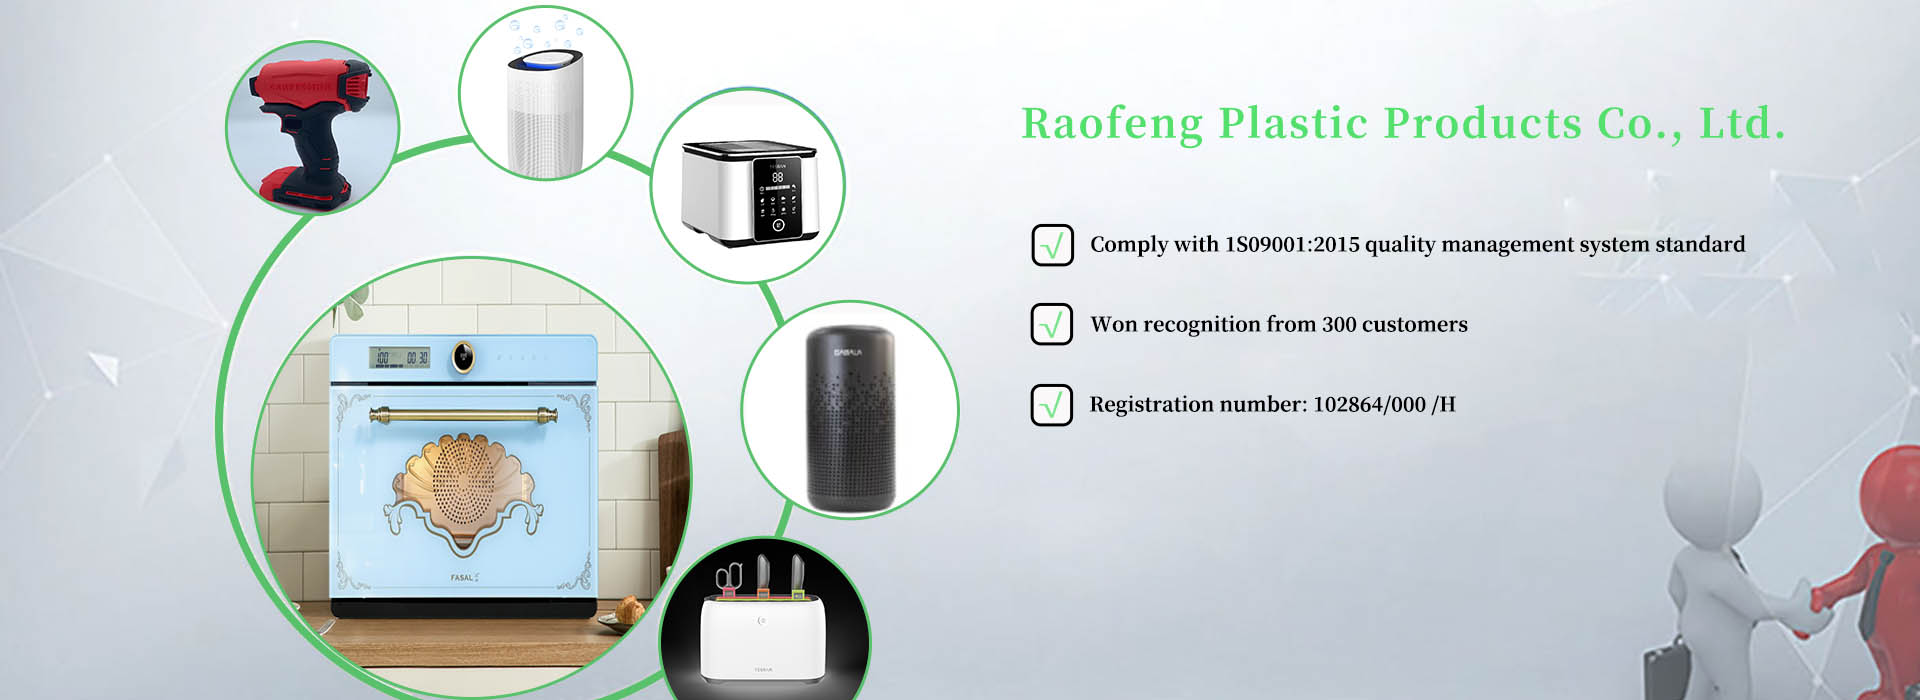 Raofeng Plastic Products Co., Ltd.